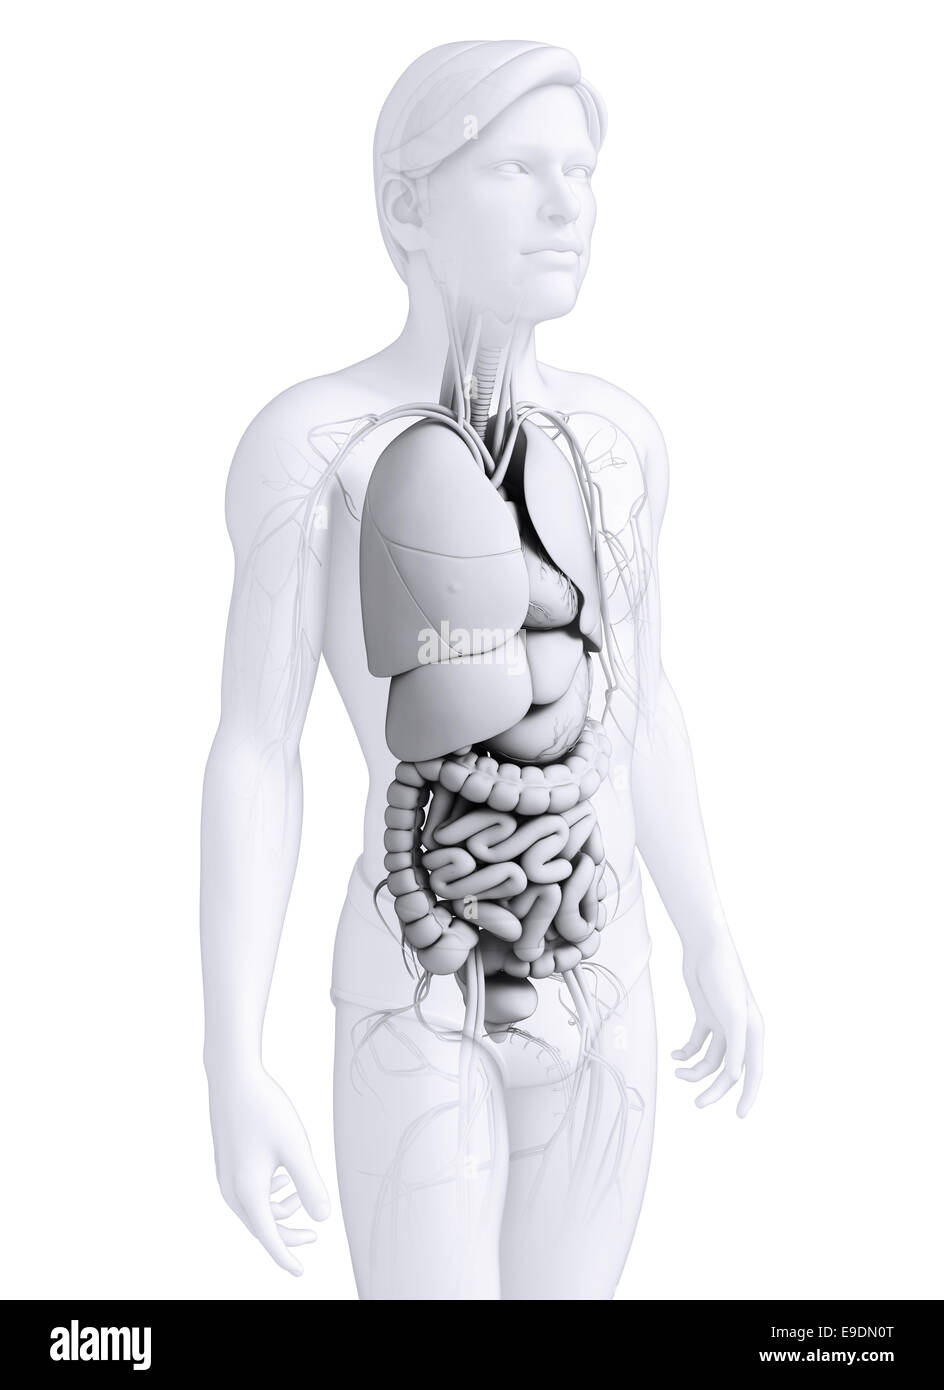 Digestive system anatomy Stock Photo - Alamy